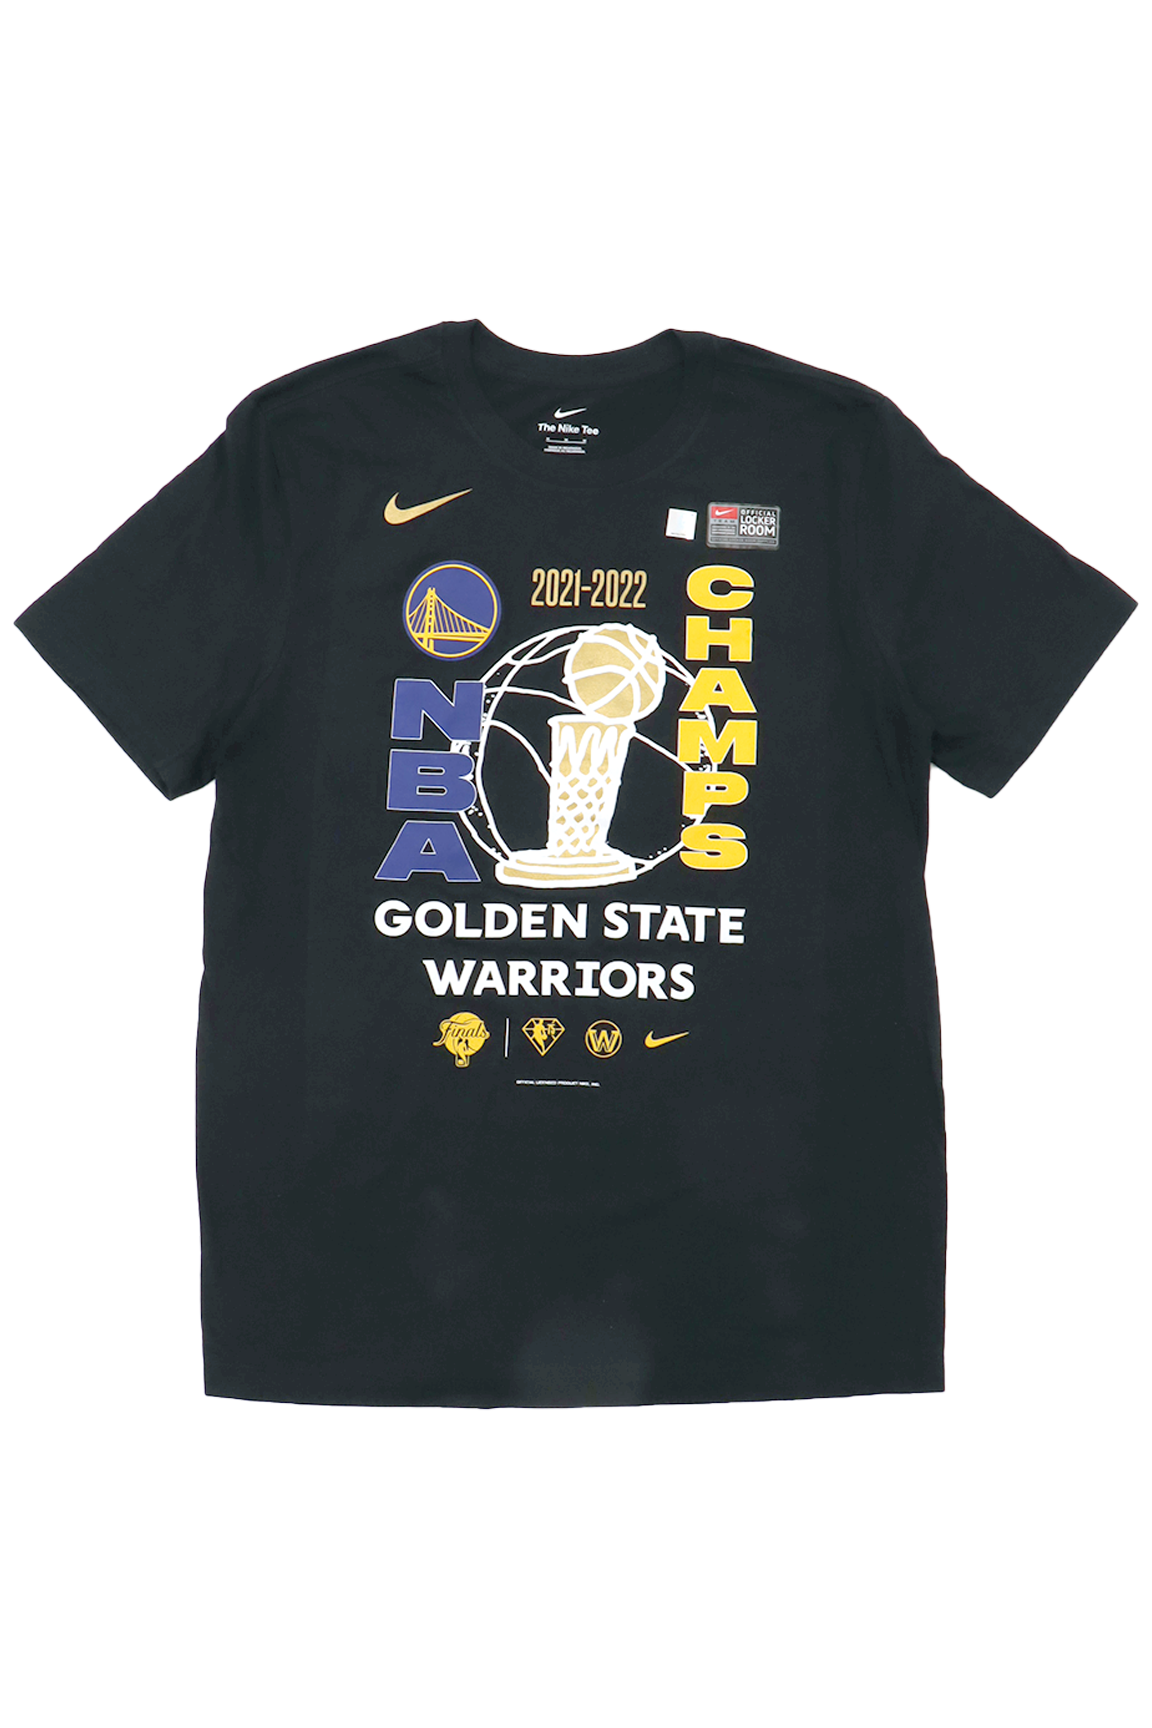 ウォリアーズ Tシャツ NBAファイナル2022 優勝記念 ロッカールーム 